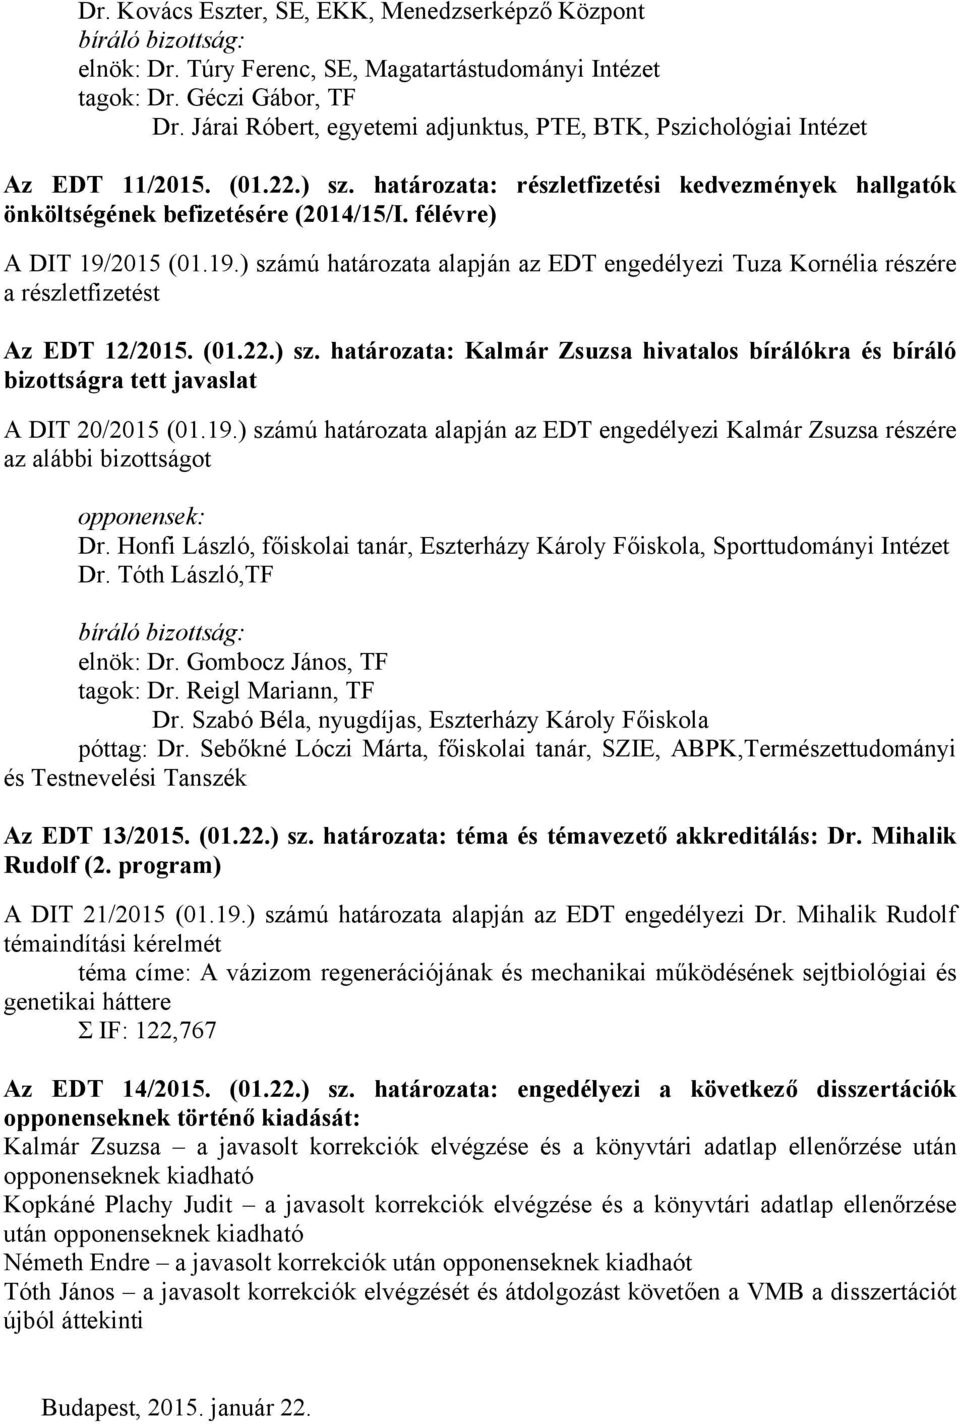 félévre) A DIT 19/2015 (01.19.) számú határozata alapján az EDT engedélyezi Tuza Kornélia részére a részletfizetést Az EDT 12/2015. (01.22.) sz. határozata: Kalmár Zsuzsa hivatalos bírálókra és bíráló bizottságra tett javaslat A DIT 20/2015 (01.